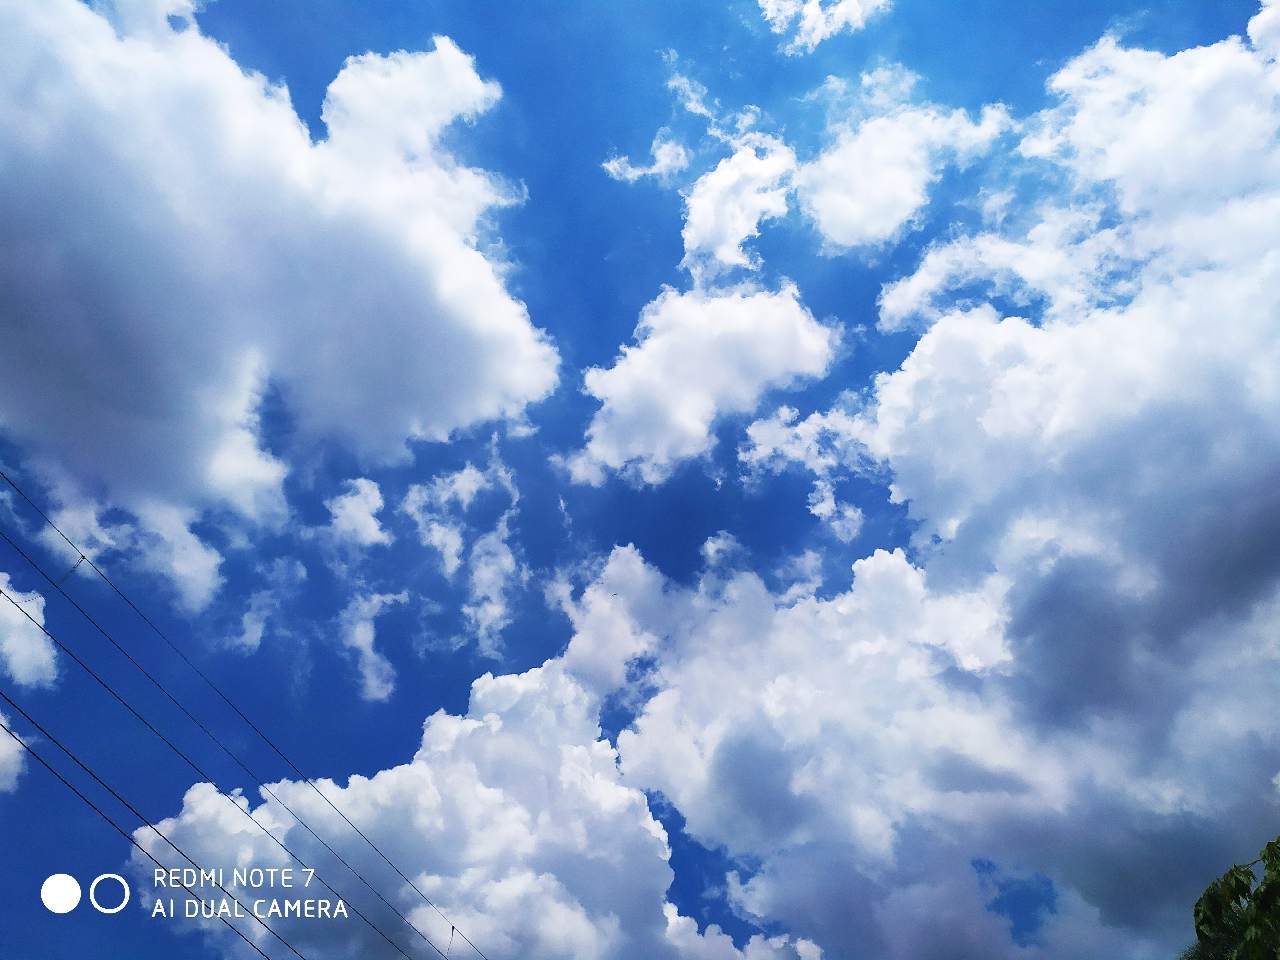 Hãy ngắm bầu trời xanh mây trắng trong hình ảnh, tạo cảm giác thư giãn cho tâm trí bạn. Cảm nhận sự thanh bình và sự tinh khiết của màu xanh và trắng, và đắm mình trong không gian mênh mông của bầu trời đẹp nhất.